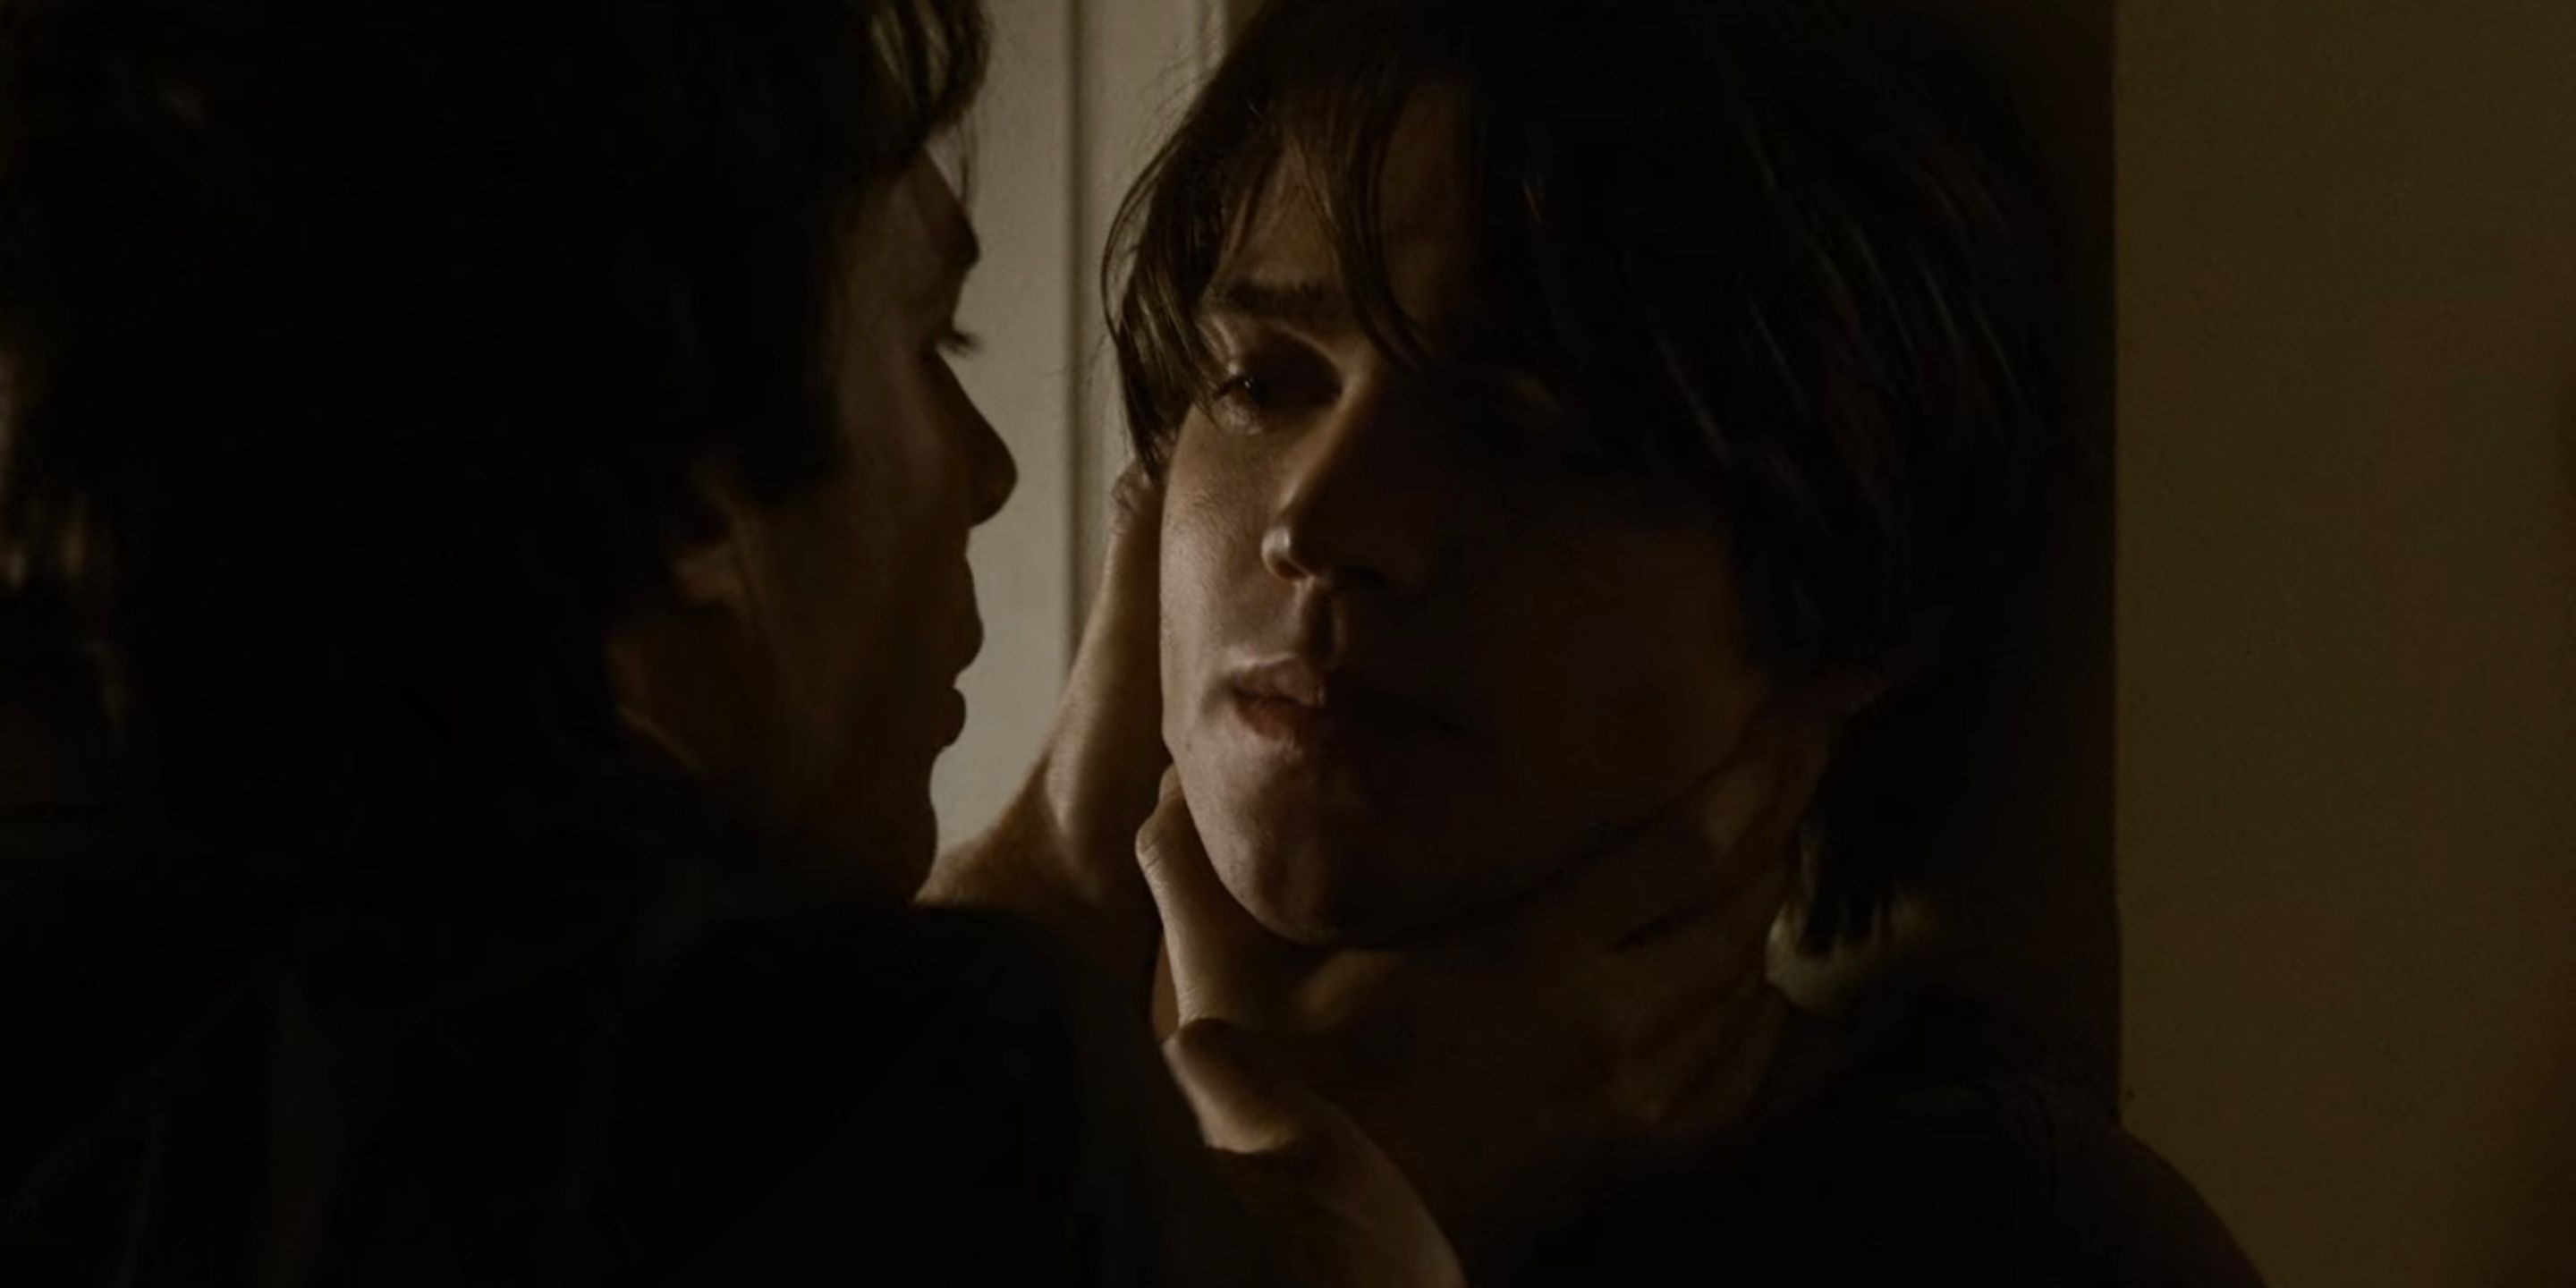 Damon kills Jeremy in The Vampire Diaries.